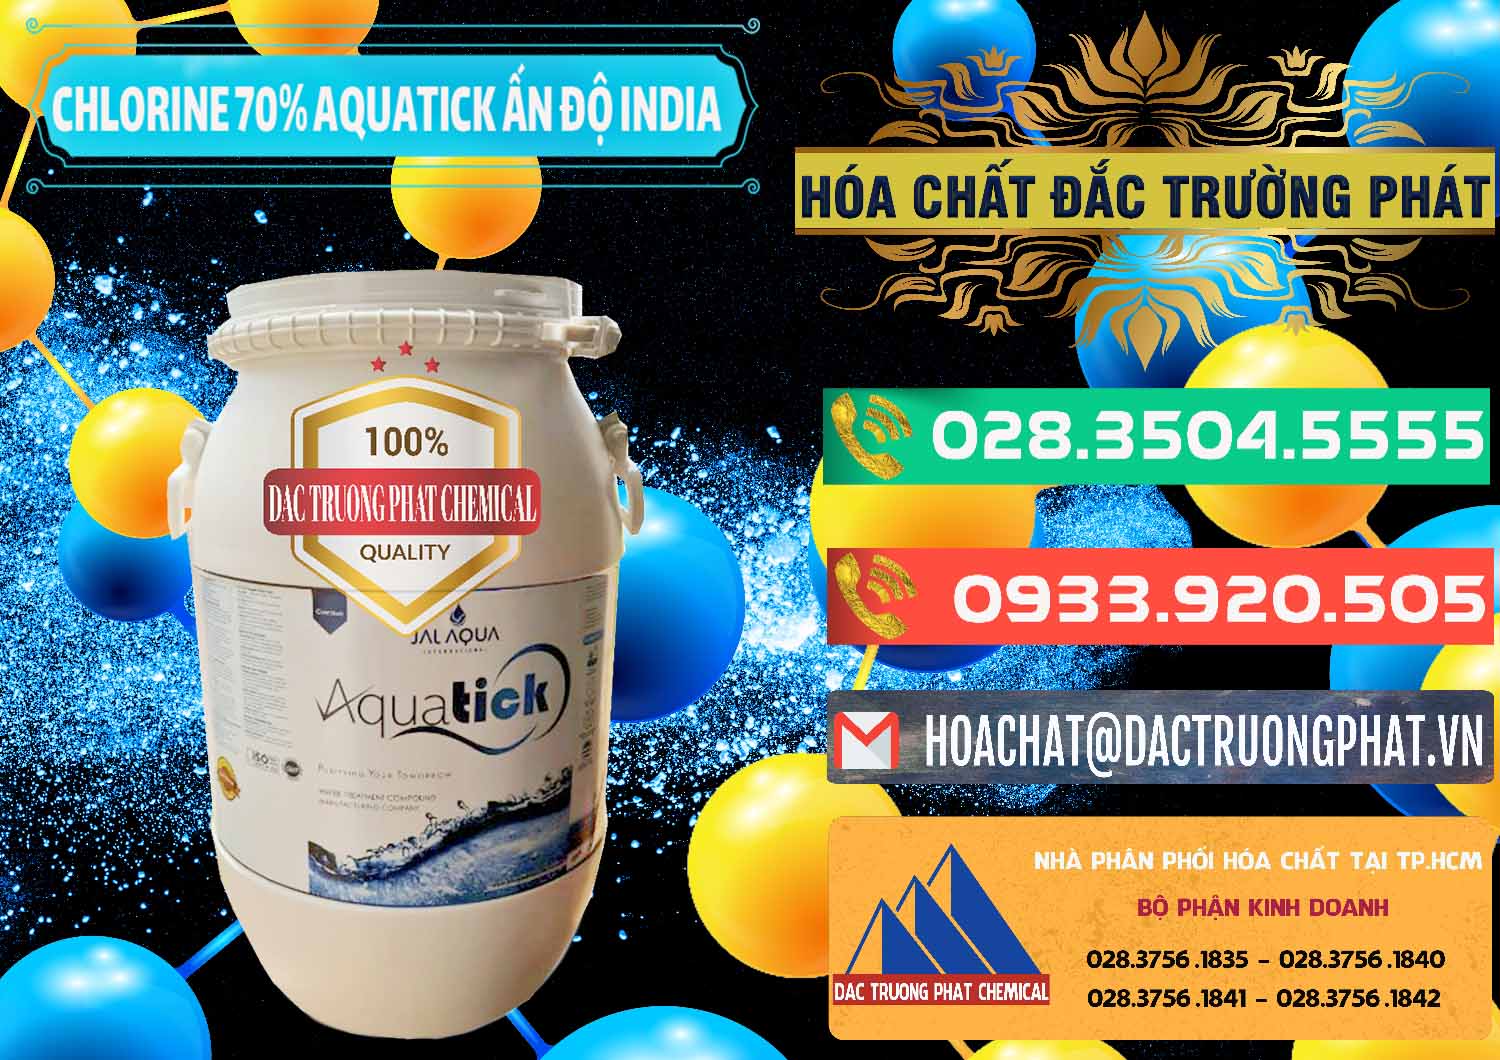 Đơn vị chuyên phân phối ( bán ) Chlorine – Clorin 70% Aquatick Jal Aqua Ấn Độ India - 0215 - Nơi chuyên cung cấp ( bán ) hóa chất tại TP.HCM - congtyhoachat.com.vn